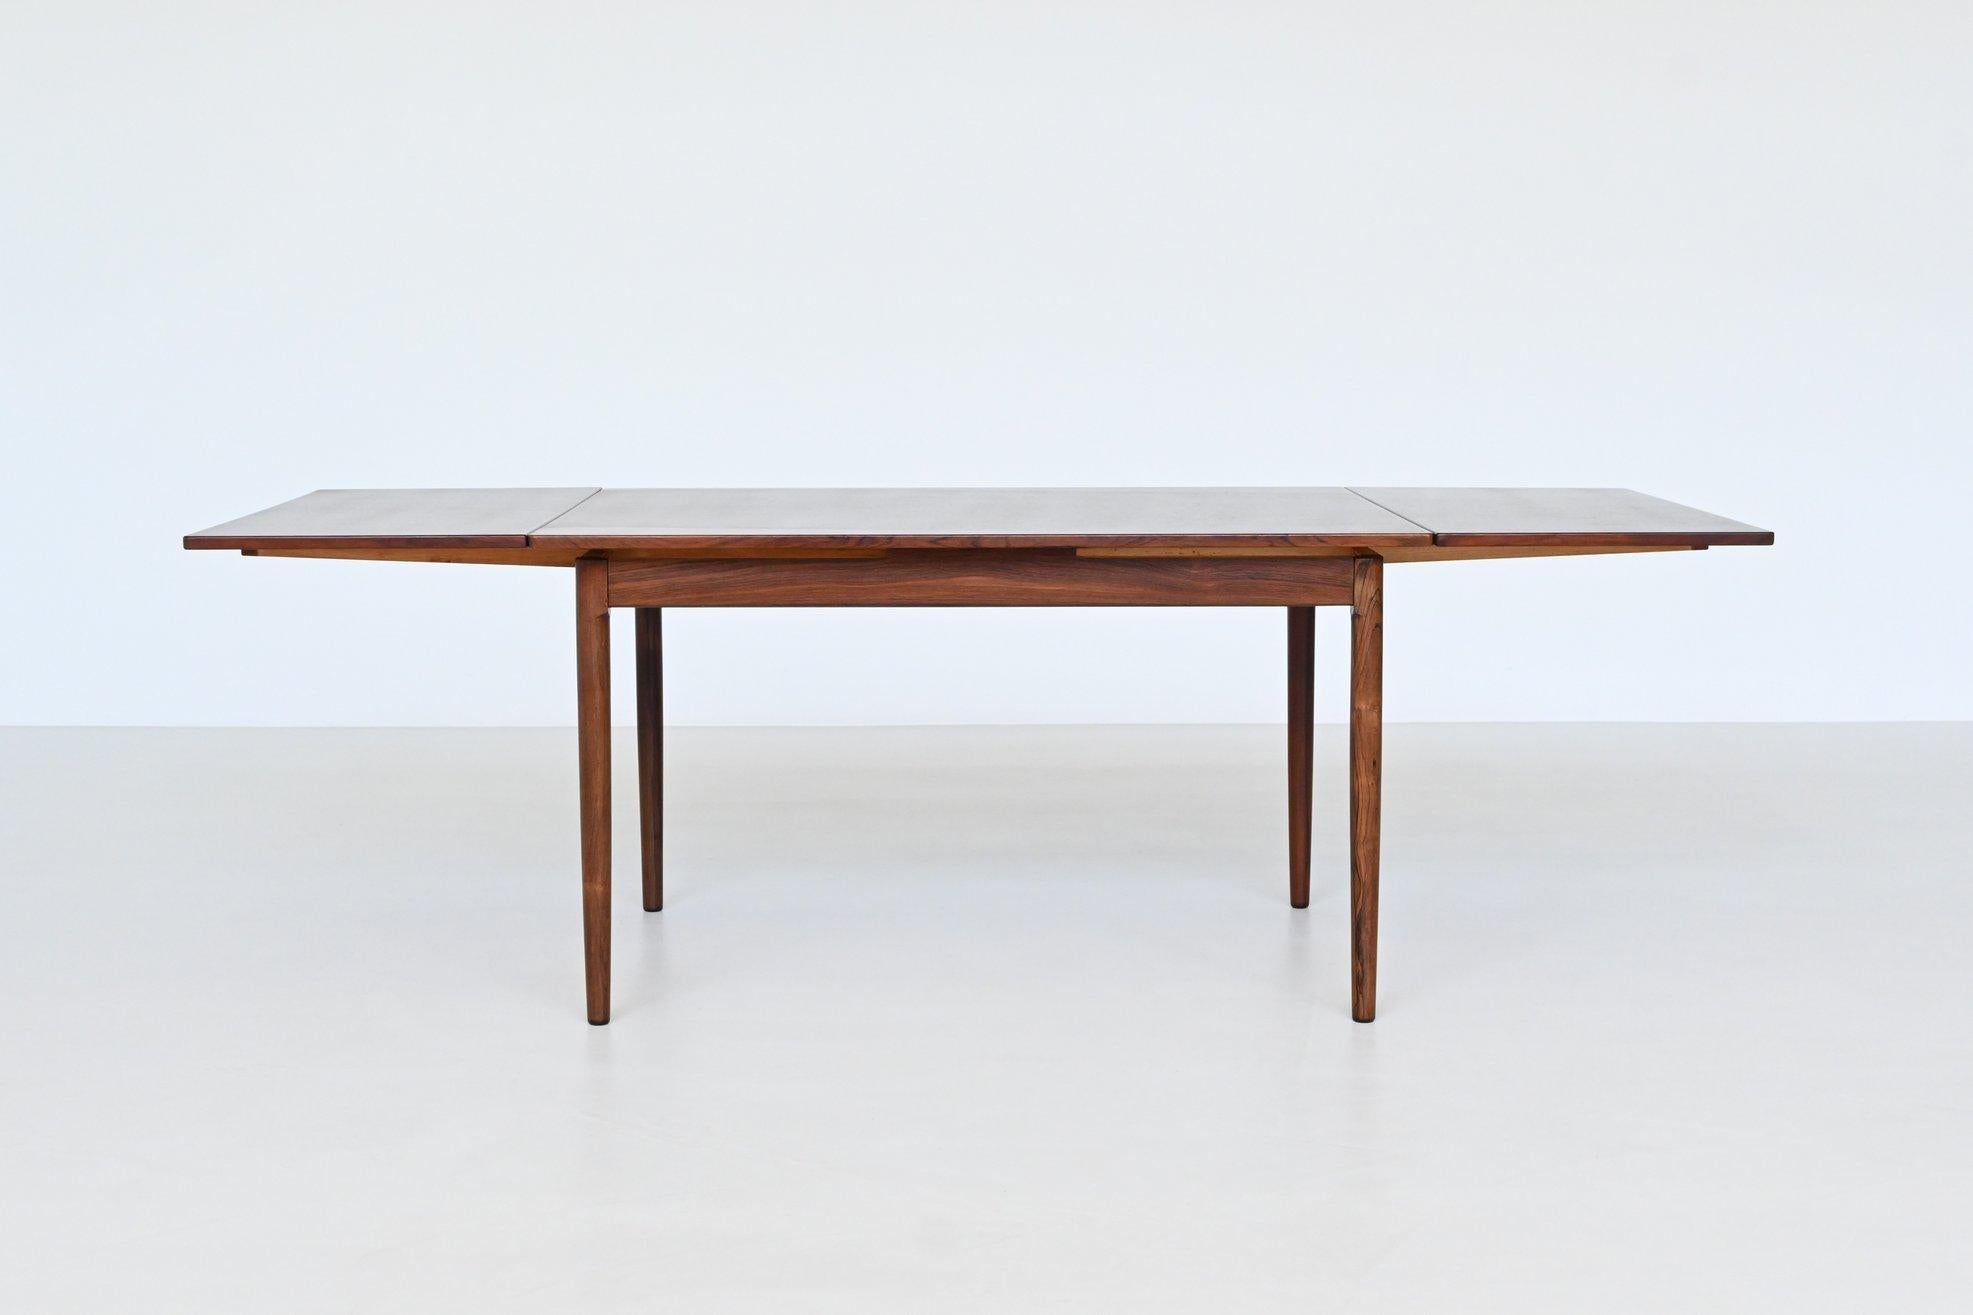 Magnifique table de salle à manger à rallonge de forme ovale conçue et fabriquée par Randers Mobelfabrik, Danemark 1960. Cette table de bonne facture est fabriquée en bois de rose chaud et magnifiquement veiné. Les pieds fuselés sont en palissandre